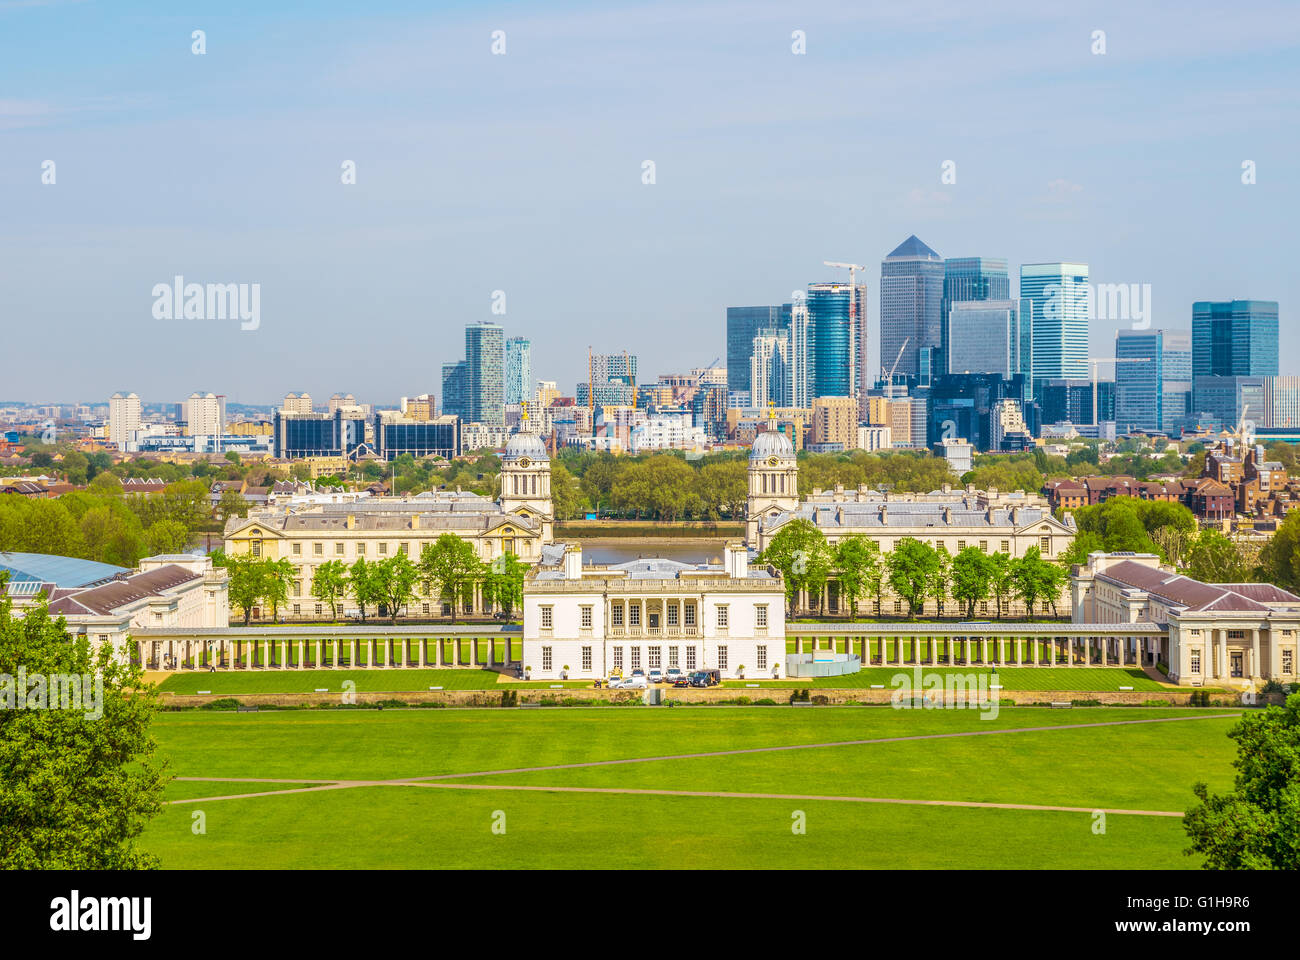 Cityscape vue depuis la colline de Greenwich de Londres, Angleterre, Royaume-Uni Banque D'Images